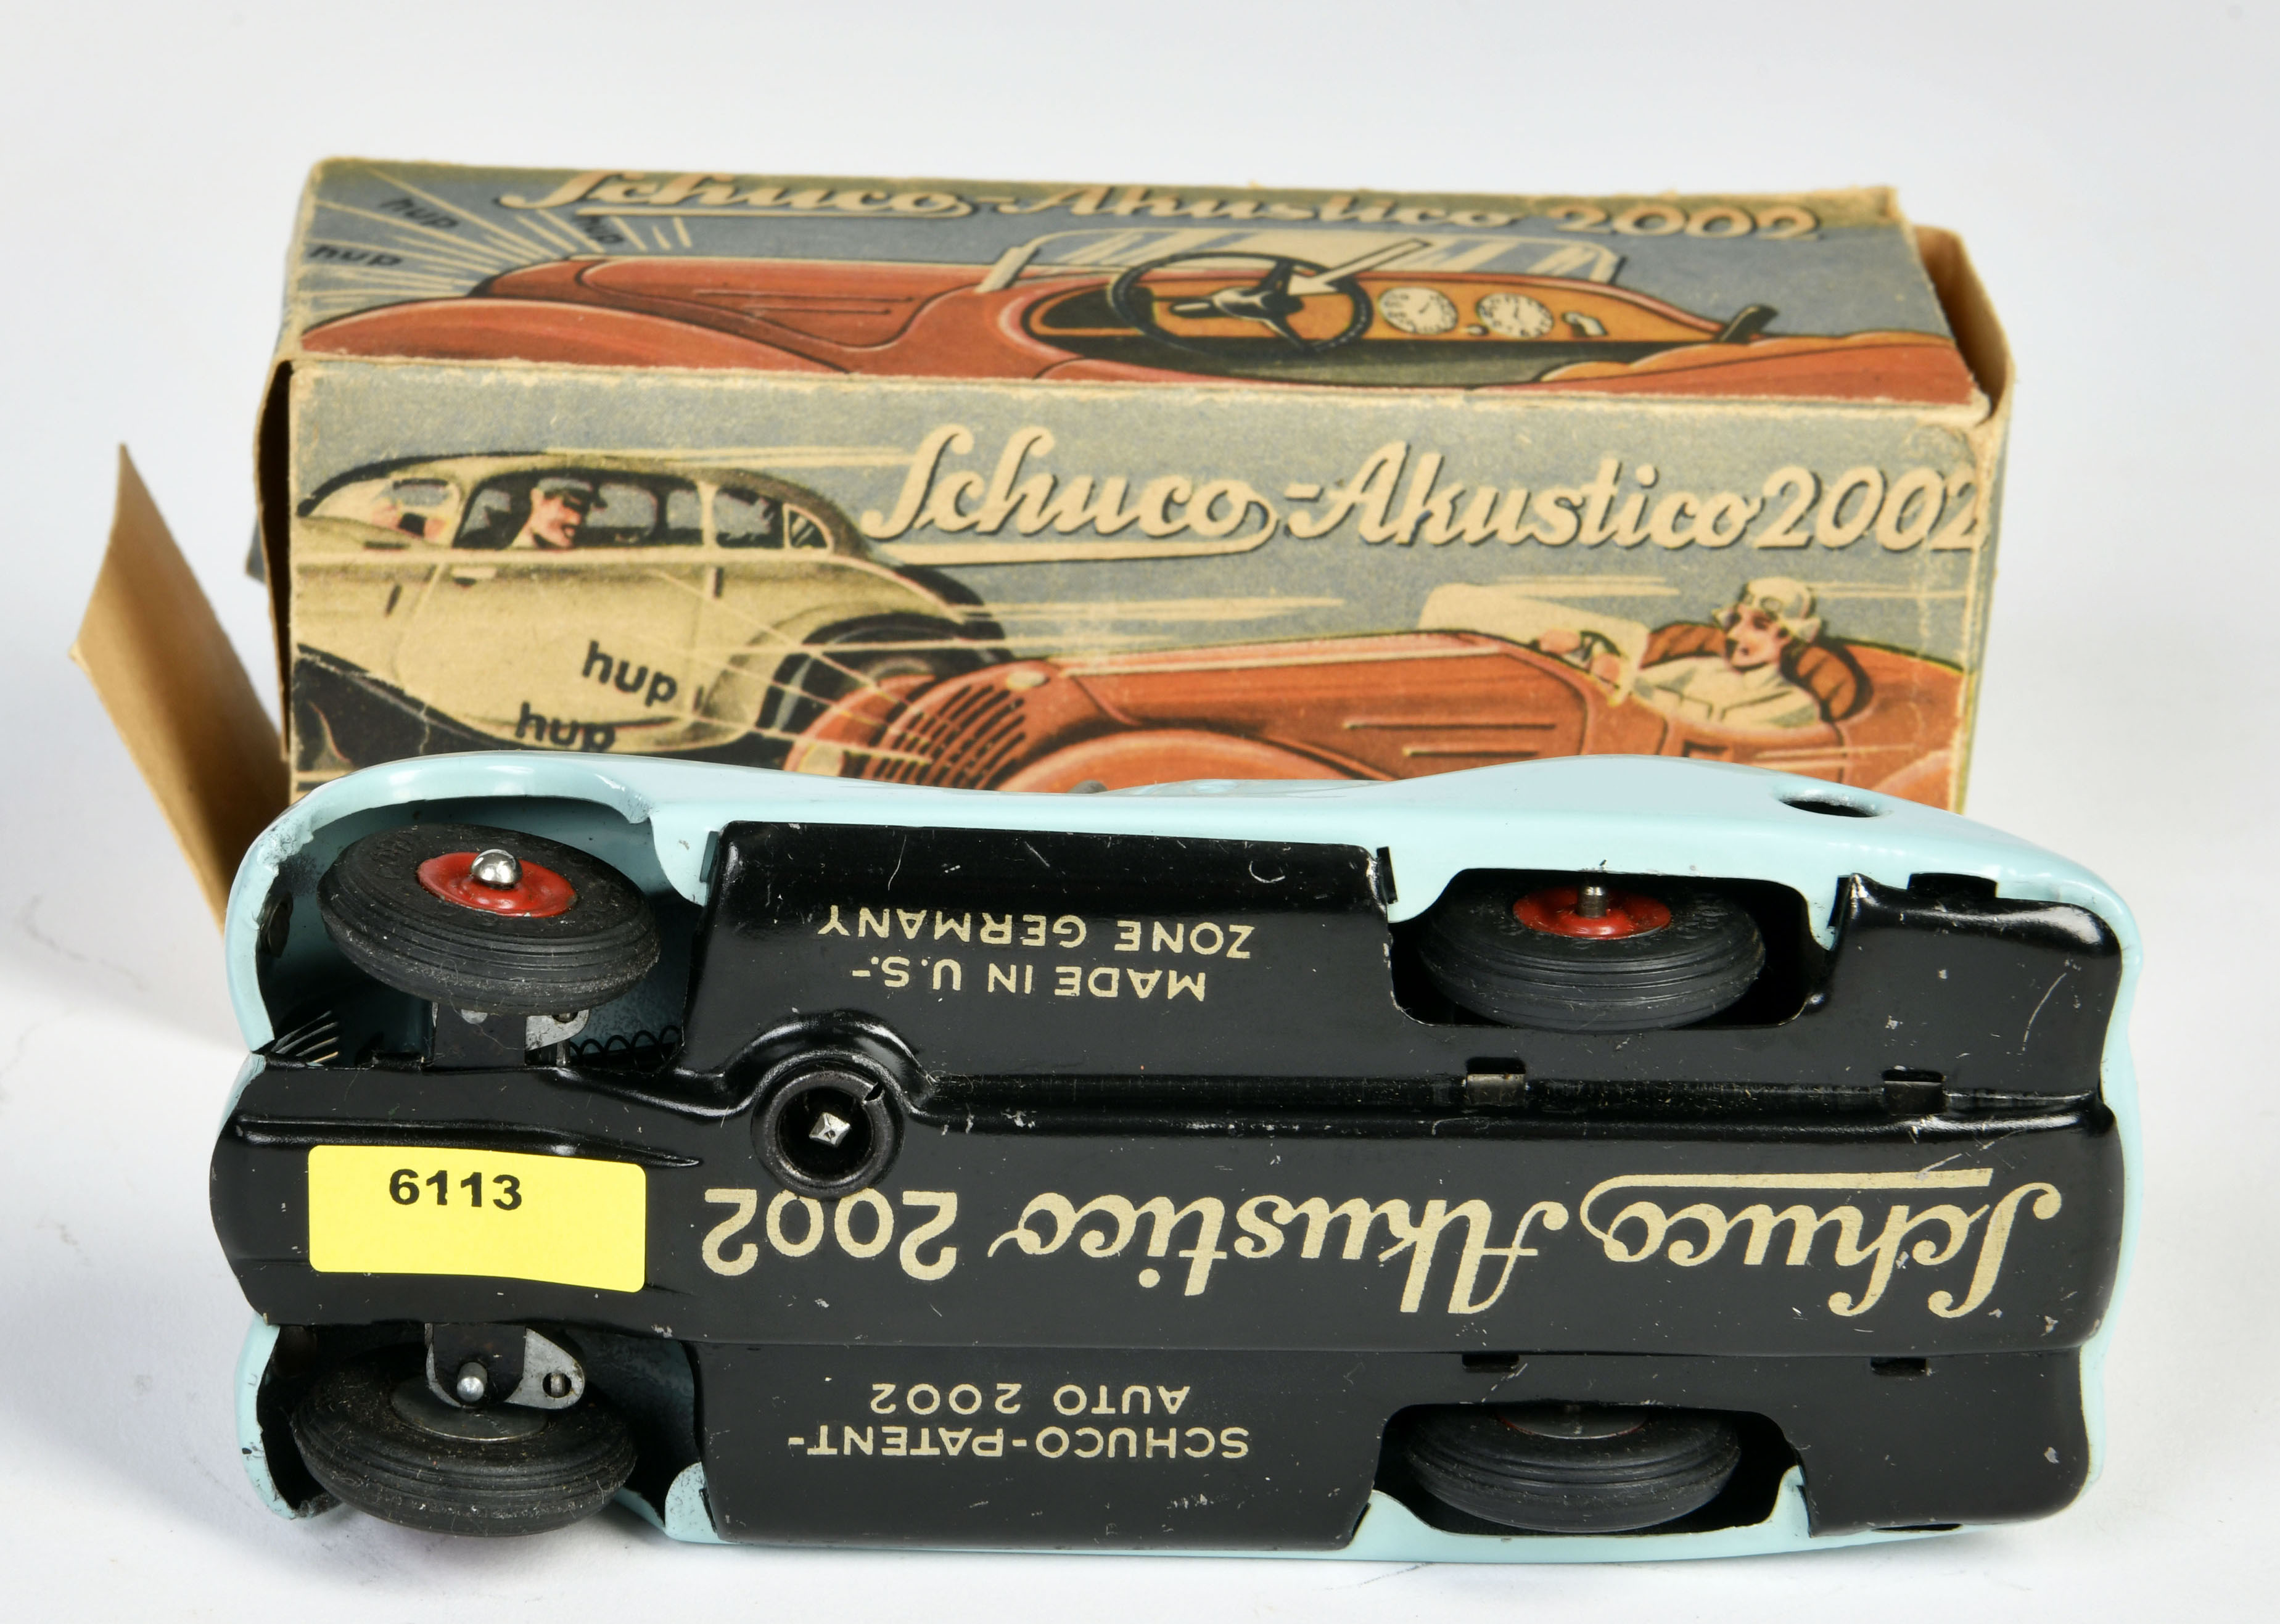 Schuco, Akustico 2002, US Z. Germany, 19 cm, tin, cw ok, box C 2, C 1 - Image 3 of 3